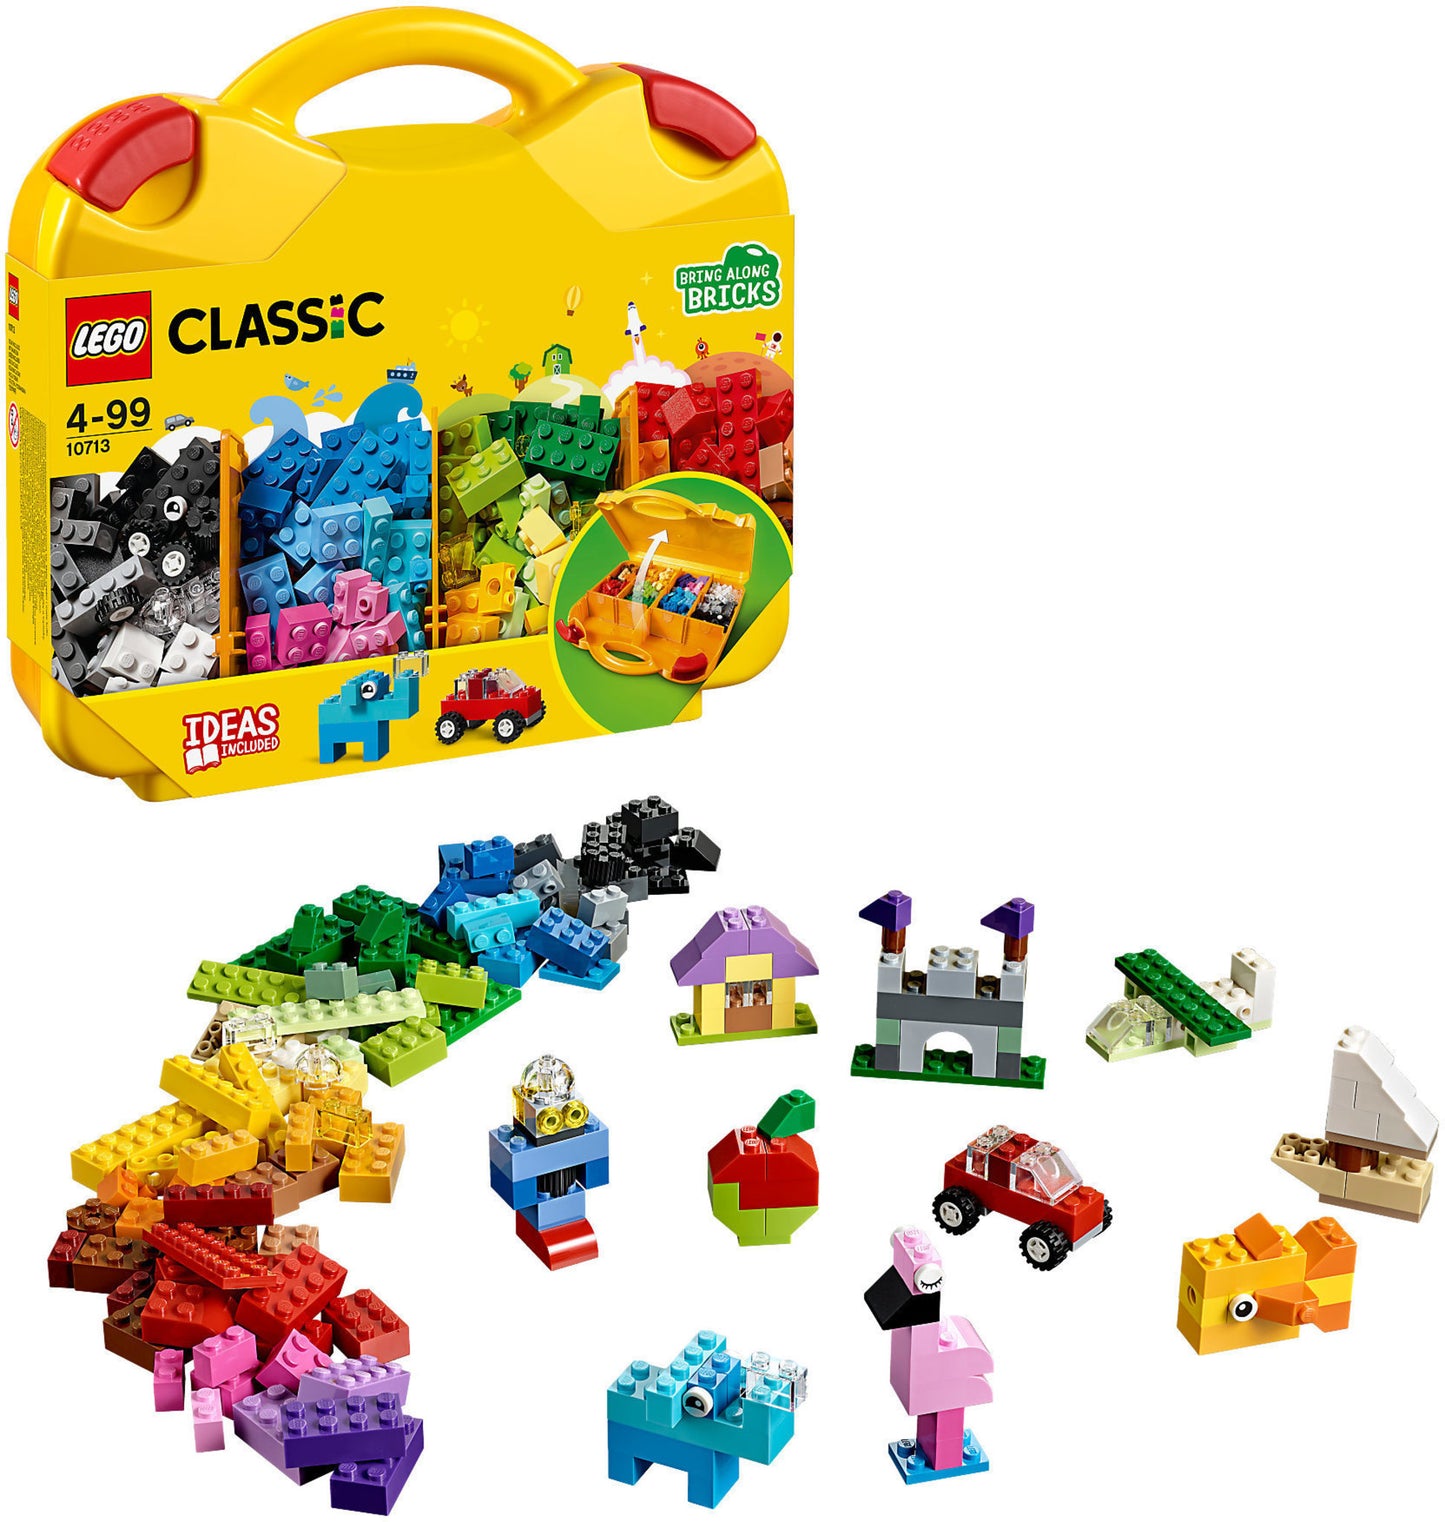 10713 LEGO Classic  - Valigetta Creativa